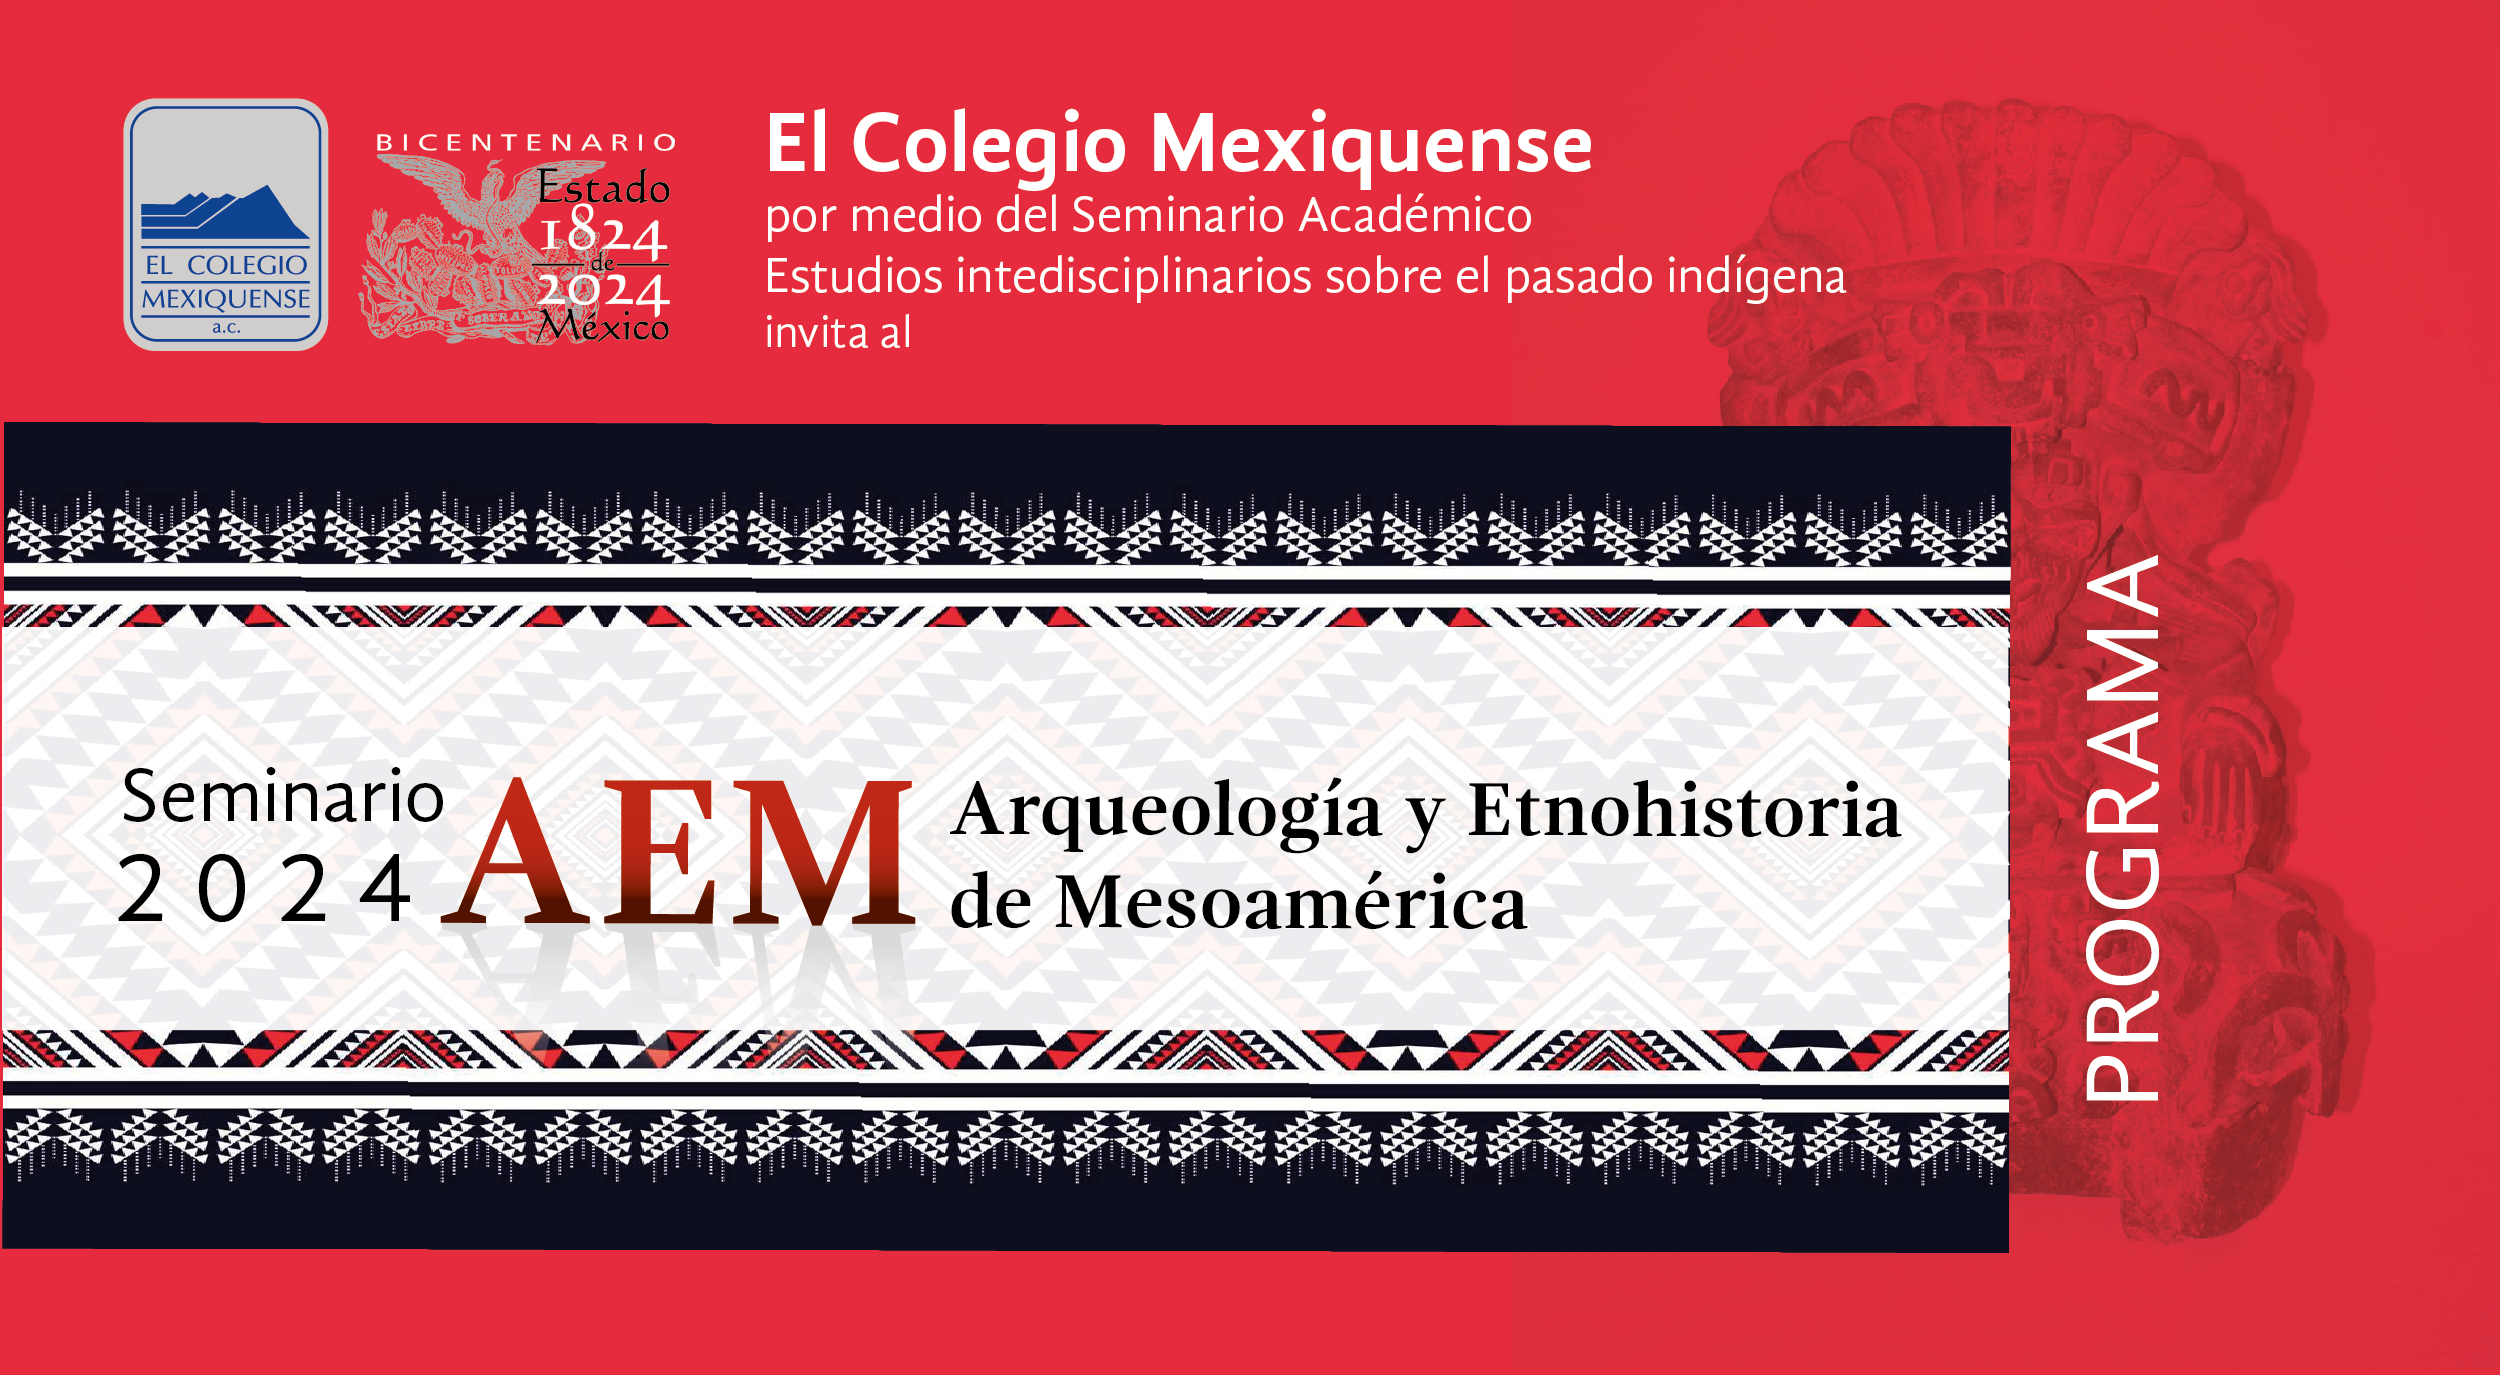 Seminario 2024. Arqueología y Etnohistoria de Mesoamérica